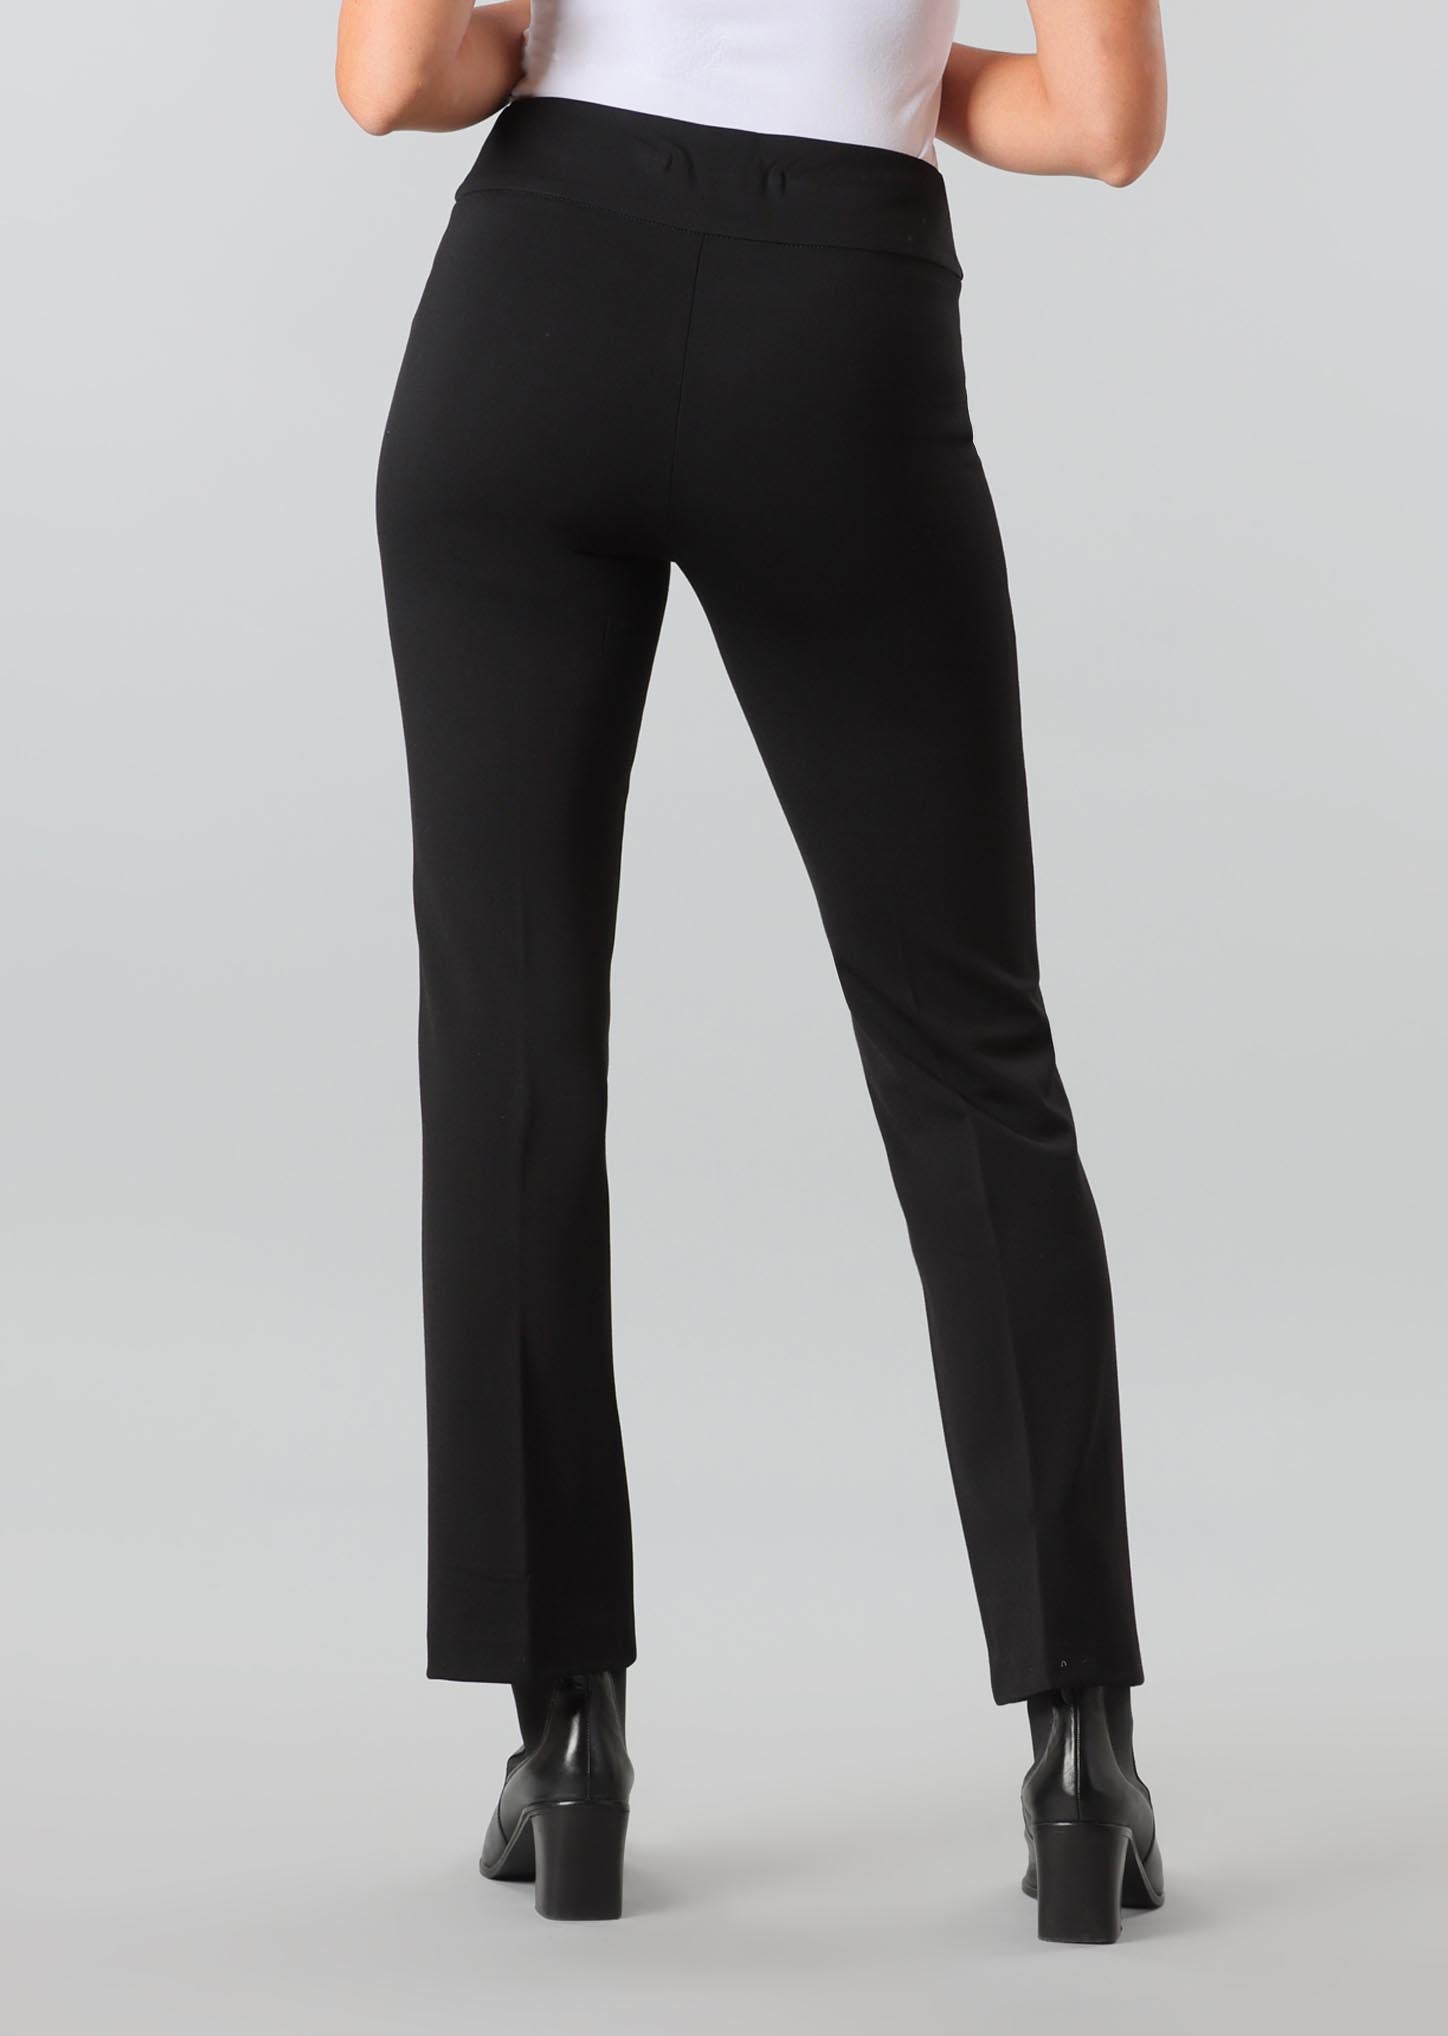 Pantalon pour femme par Lisette L | 25856 Black/Noir | Boutique Vvög, vêtements mode pour homme et femme